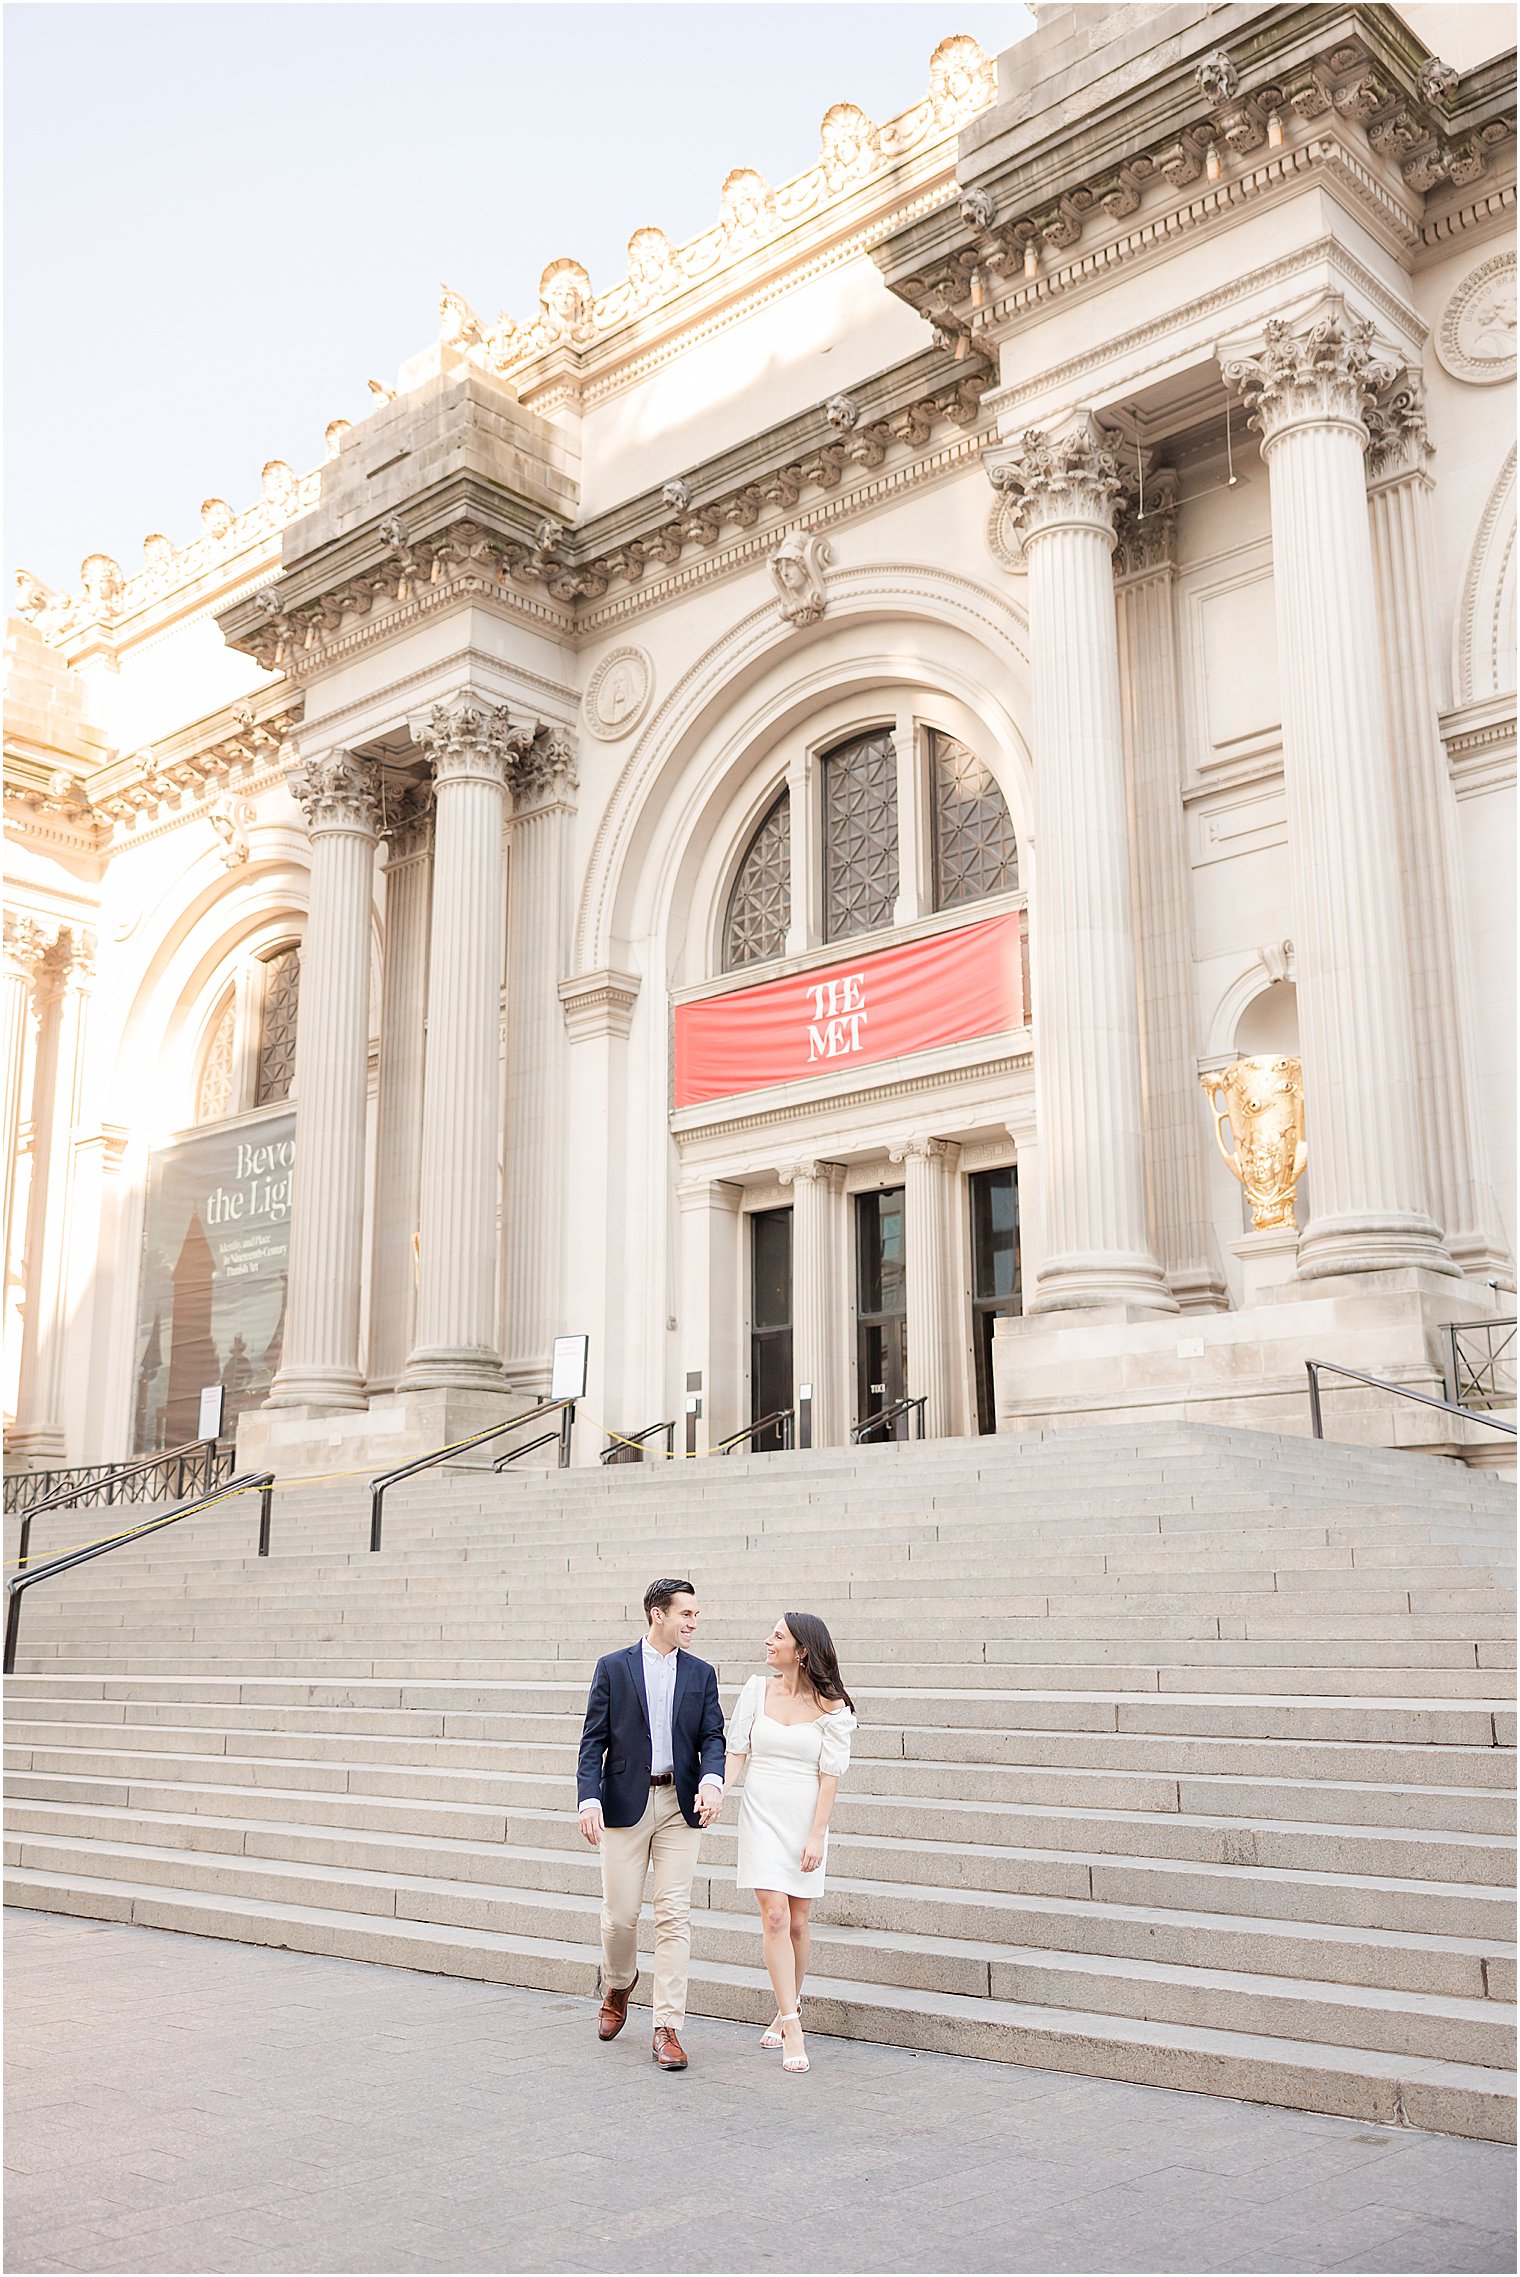 groom in navy blazer helps bride in white dress down steps of the MET Museum in NYC